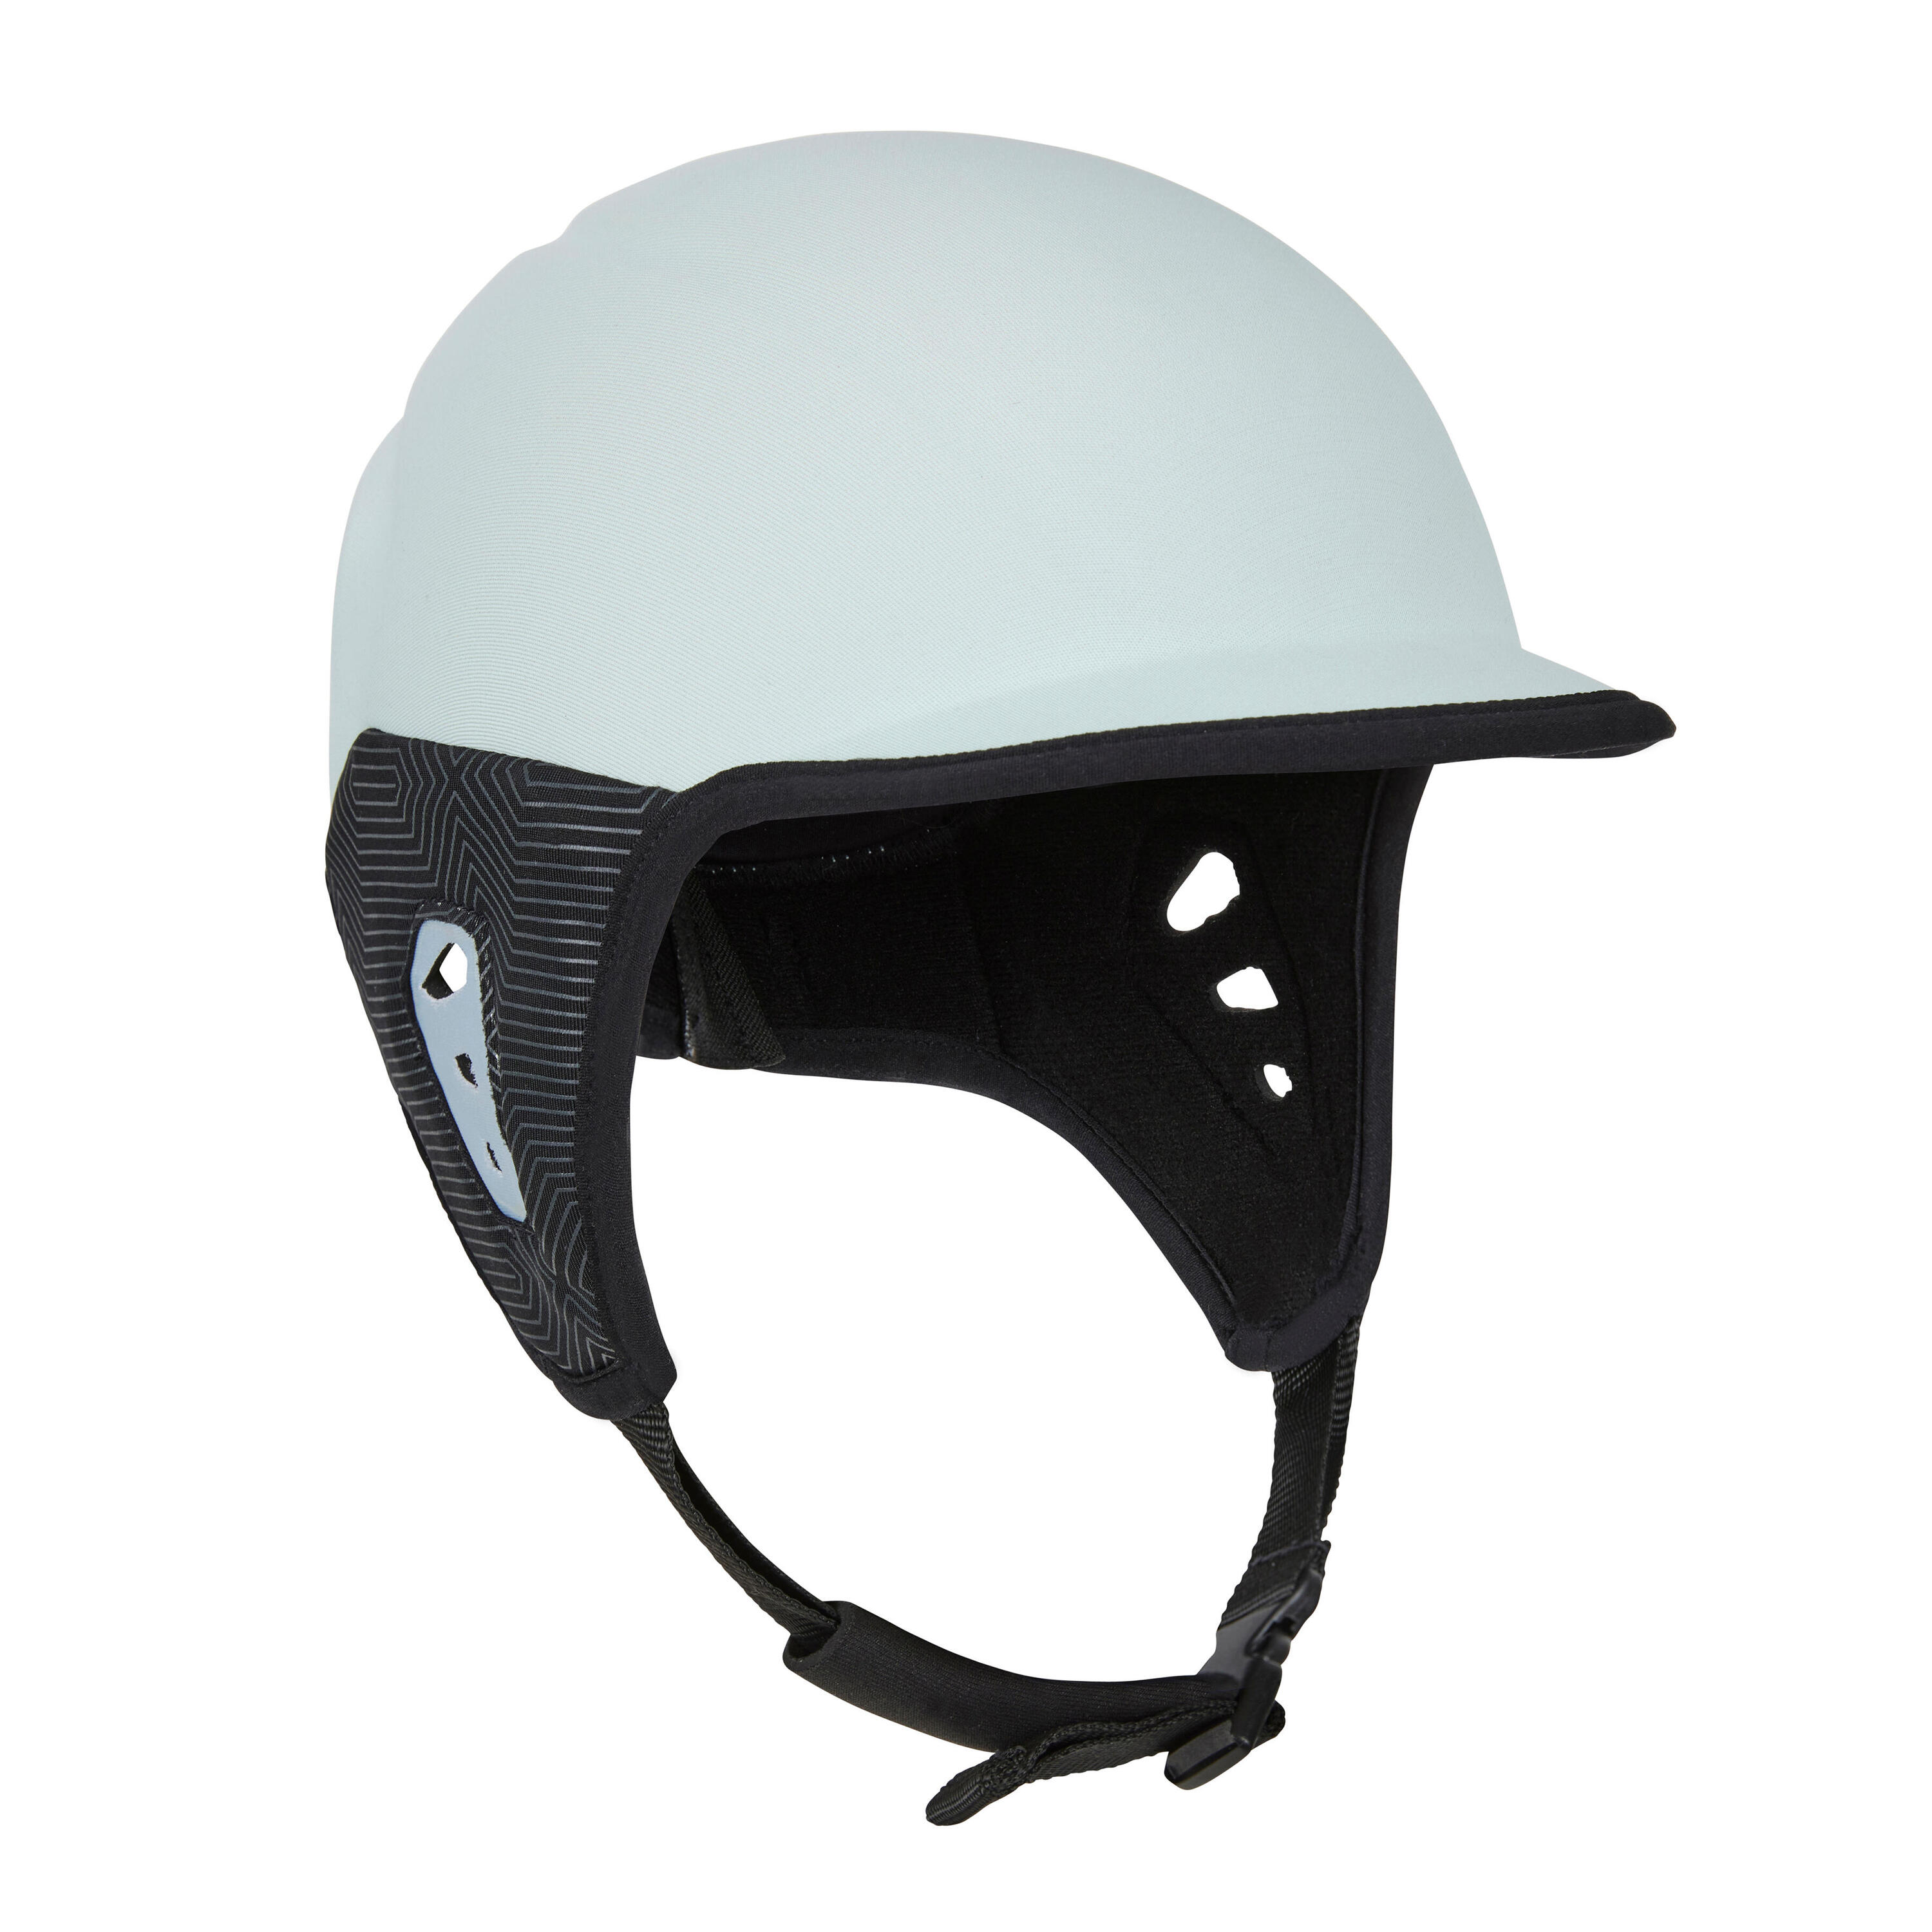 Helmet for surfing. Sky blue 3/7